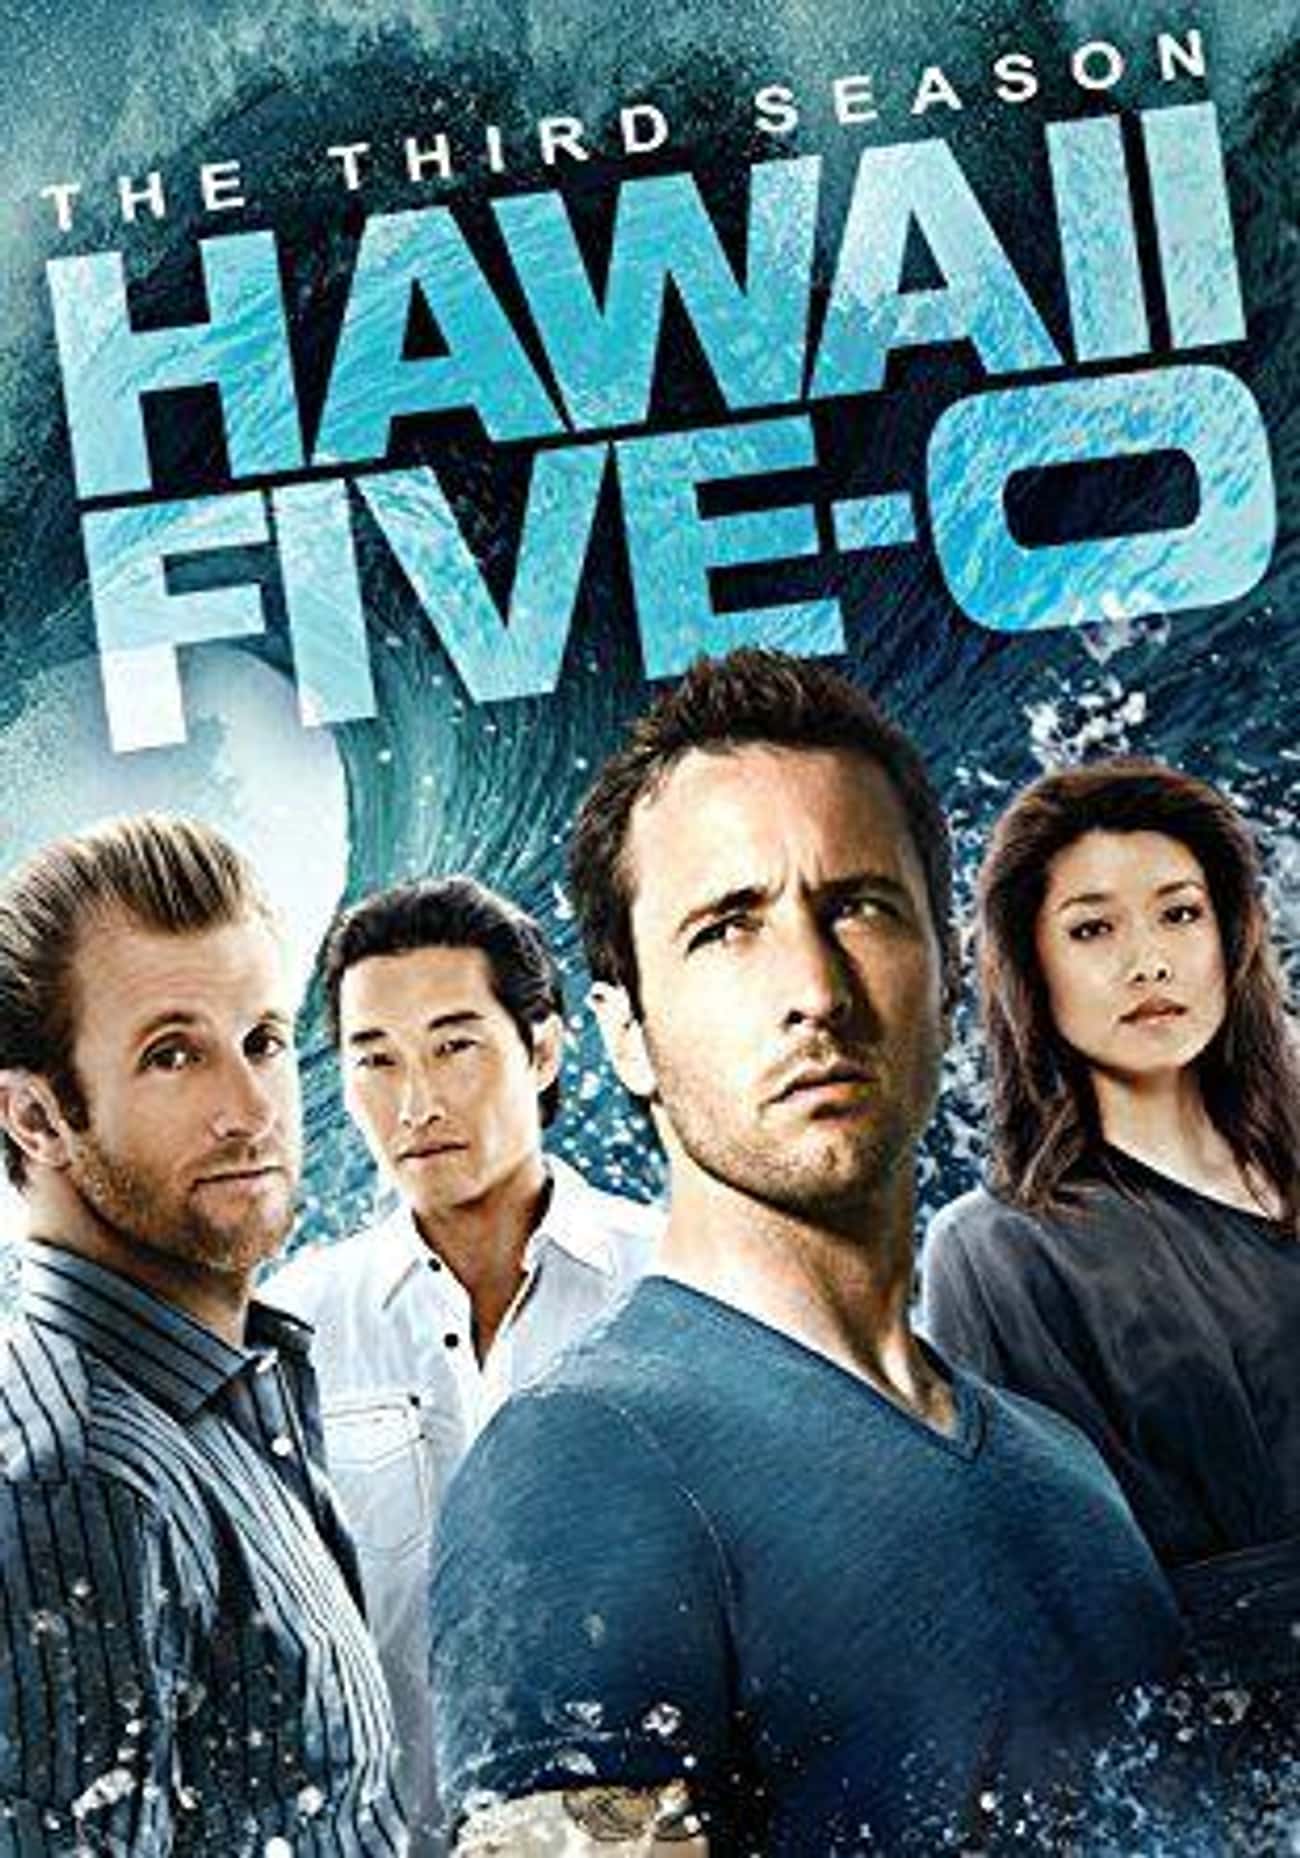 Hawaii Five-0 - Season 3